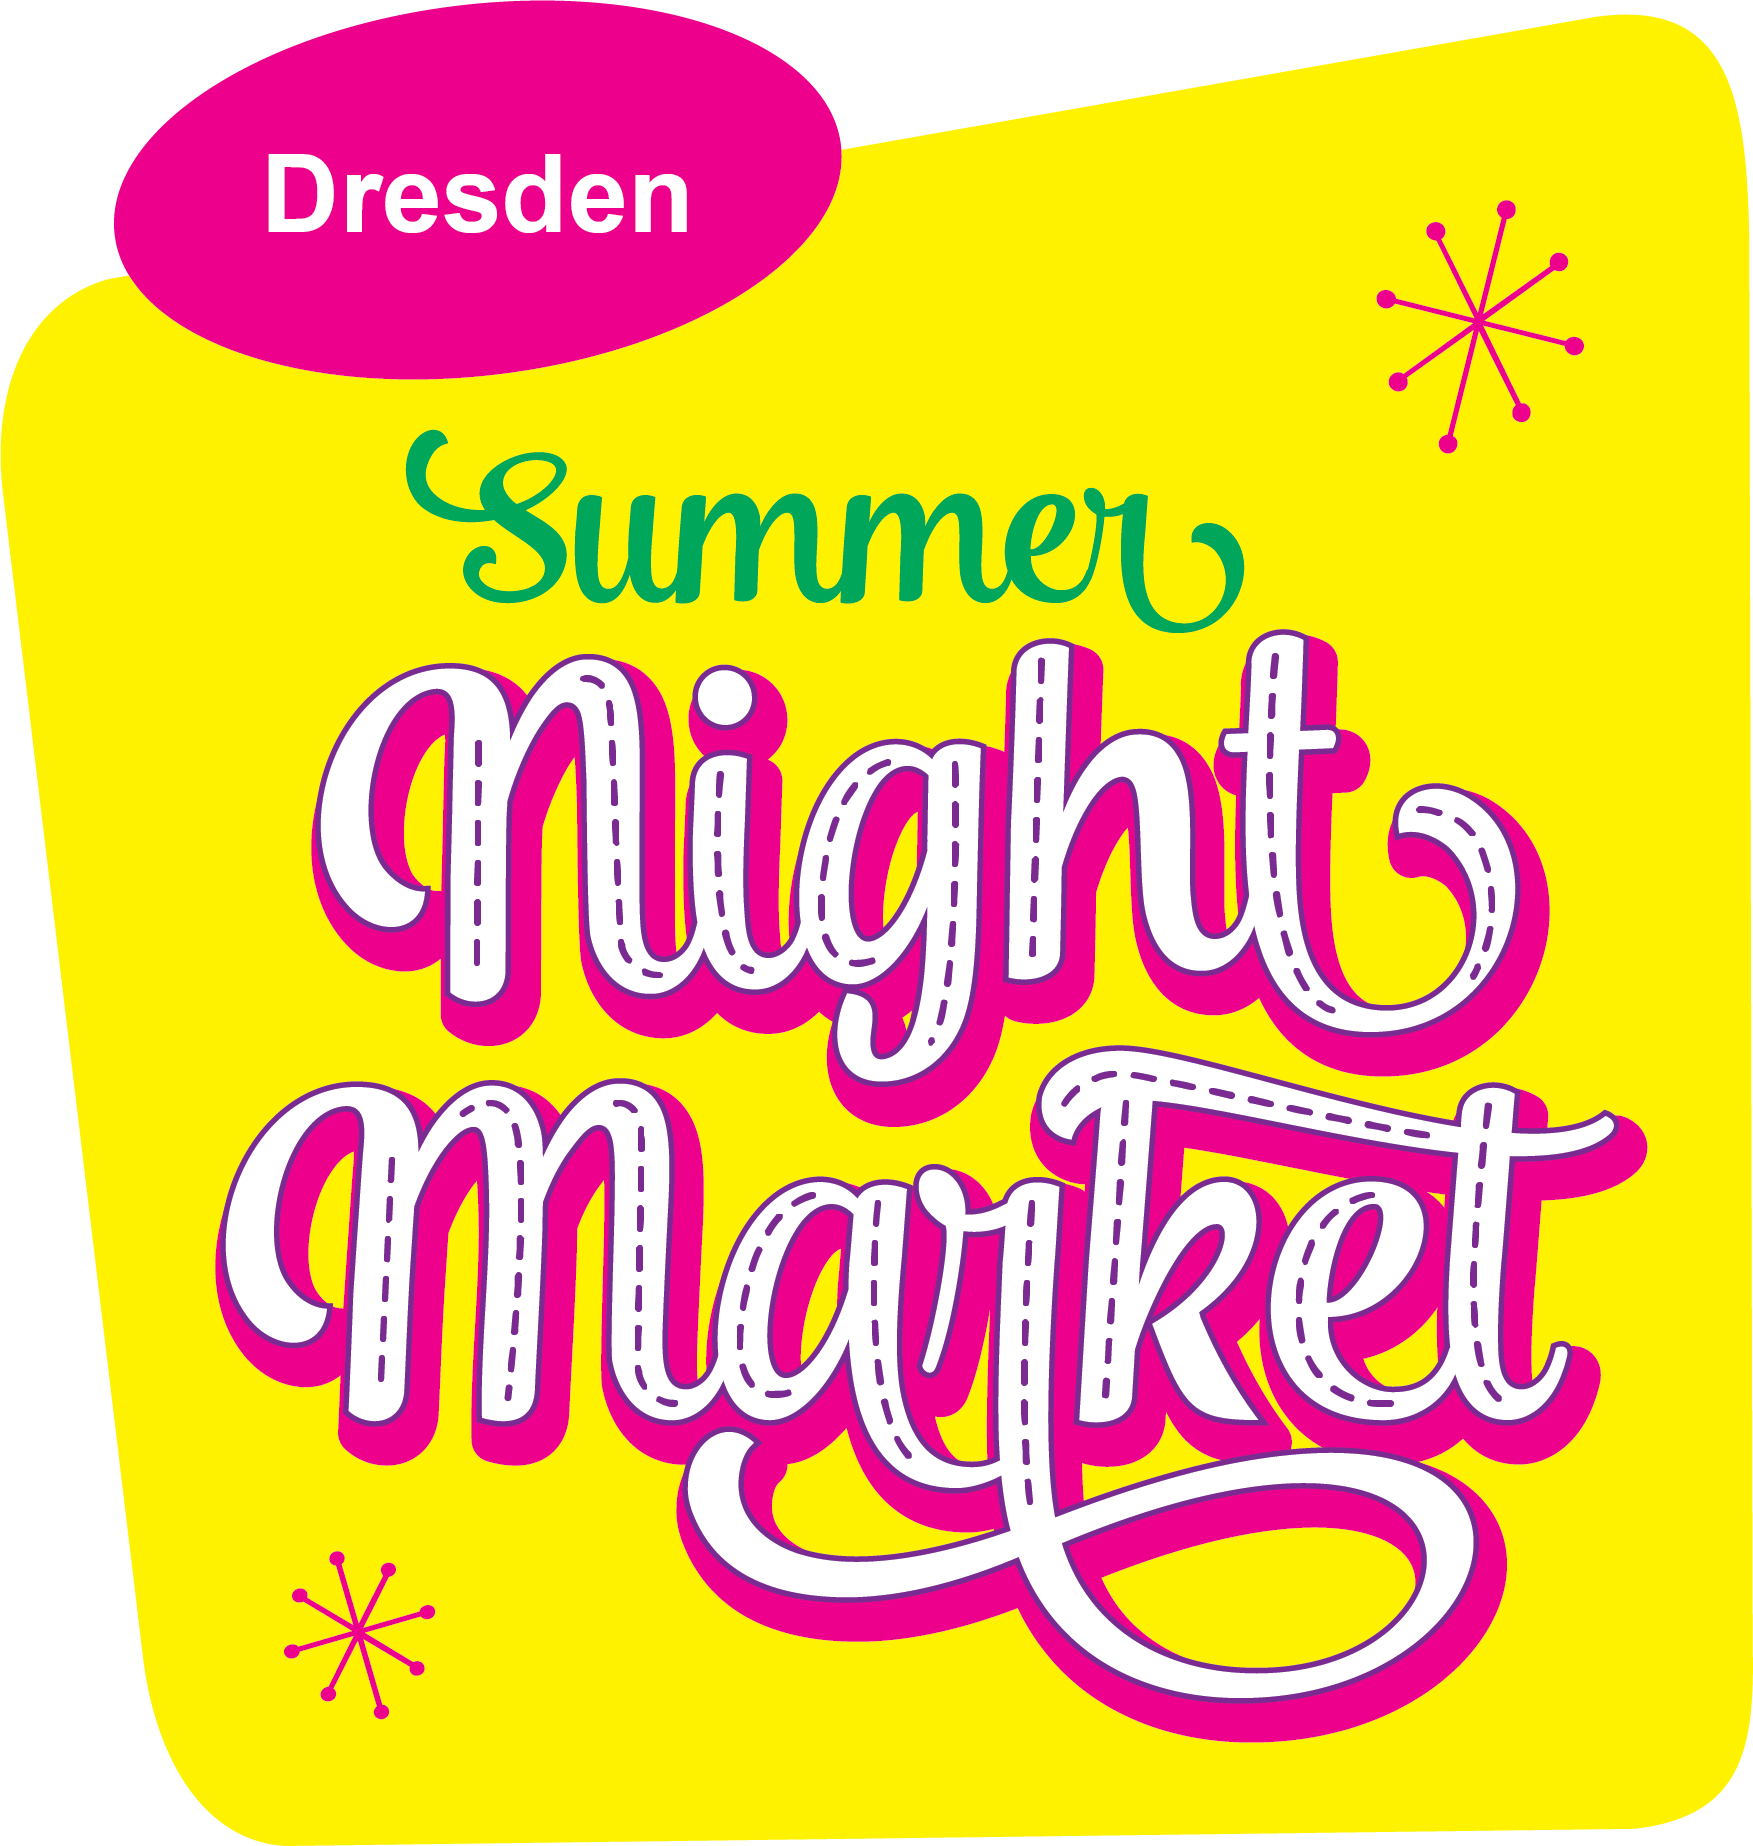 Dresden Night Market